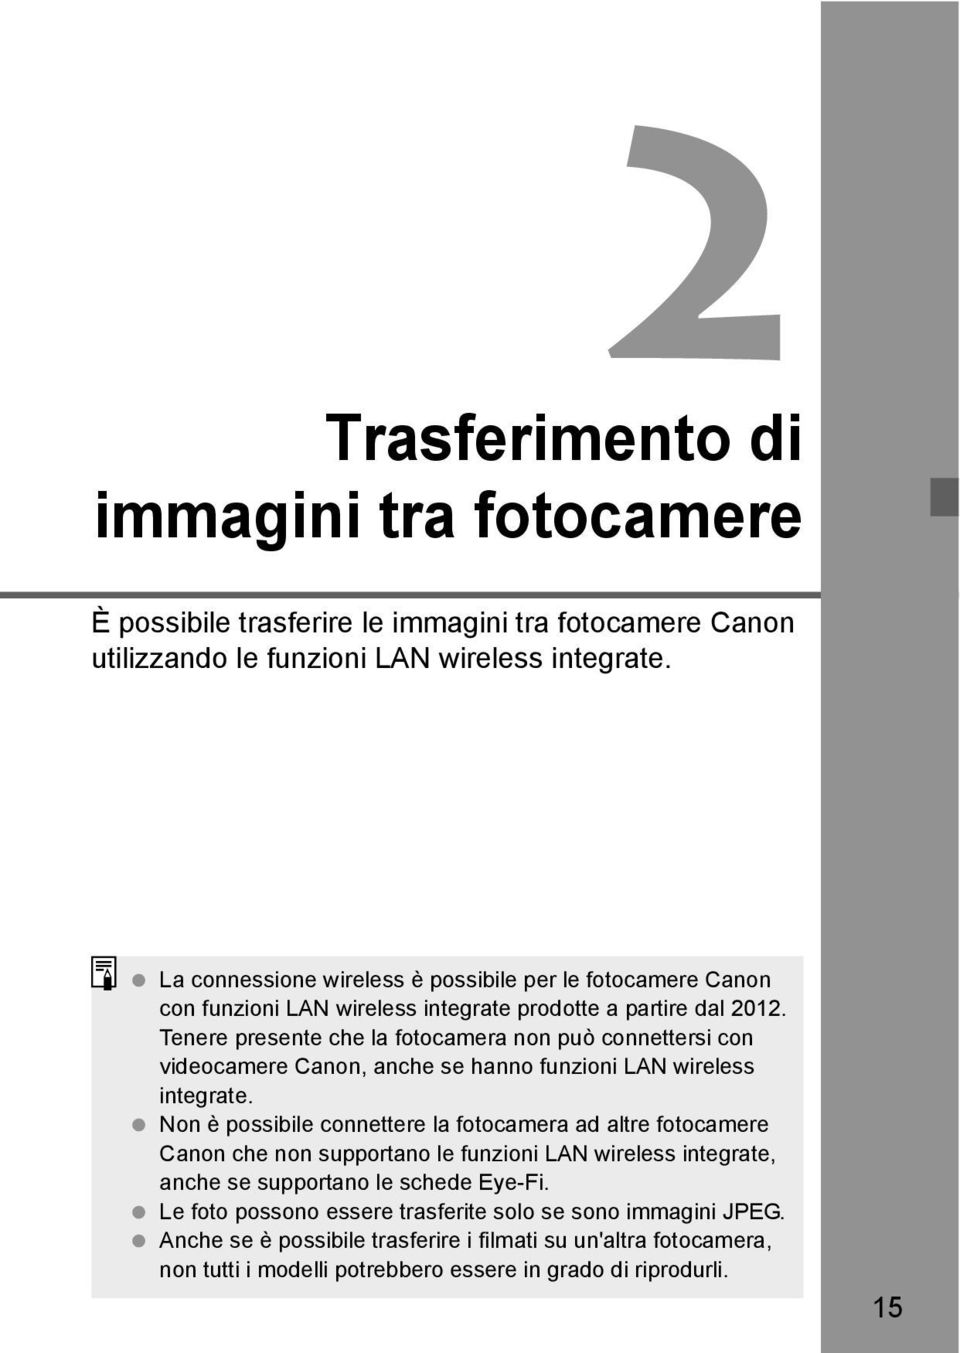 Tenere presente che la fotocamera non può connettersi con videocamere Canon, anche se hanno funzioni LAN wireless integrate.